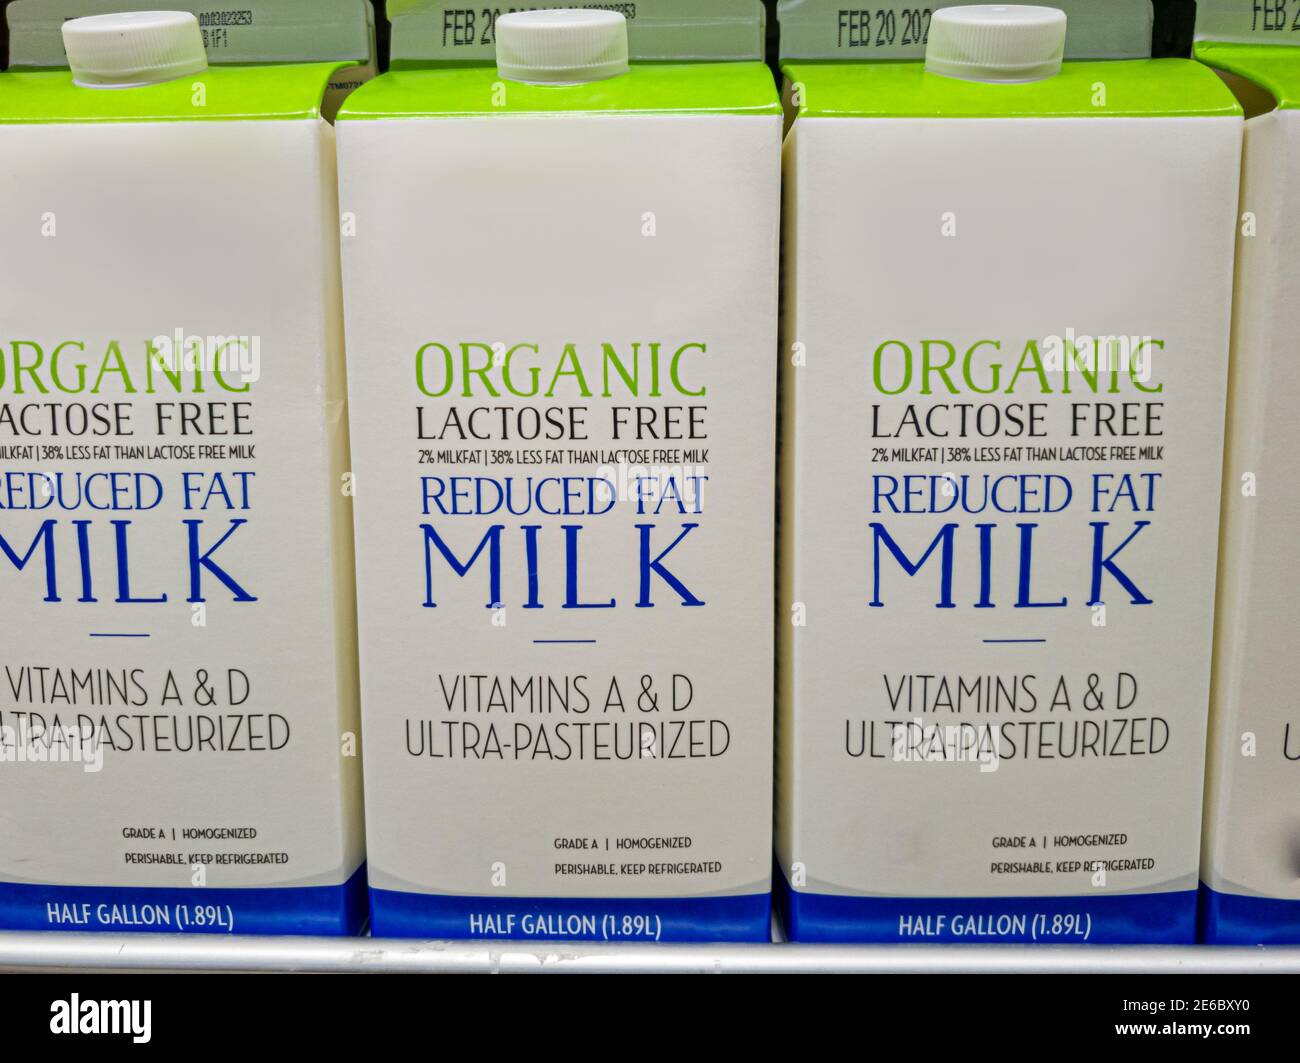 Cartoni da mezzo gallone di latte organico ridotto privo di lattosio su ripiano frigorifero. Questo è per le persone che sono intolleranti al lattosio a causa di deficienza enzimatica Foto Stock